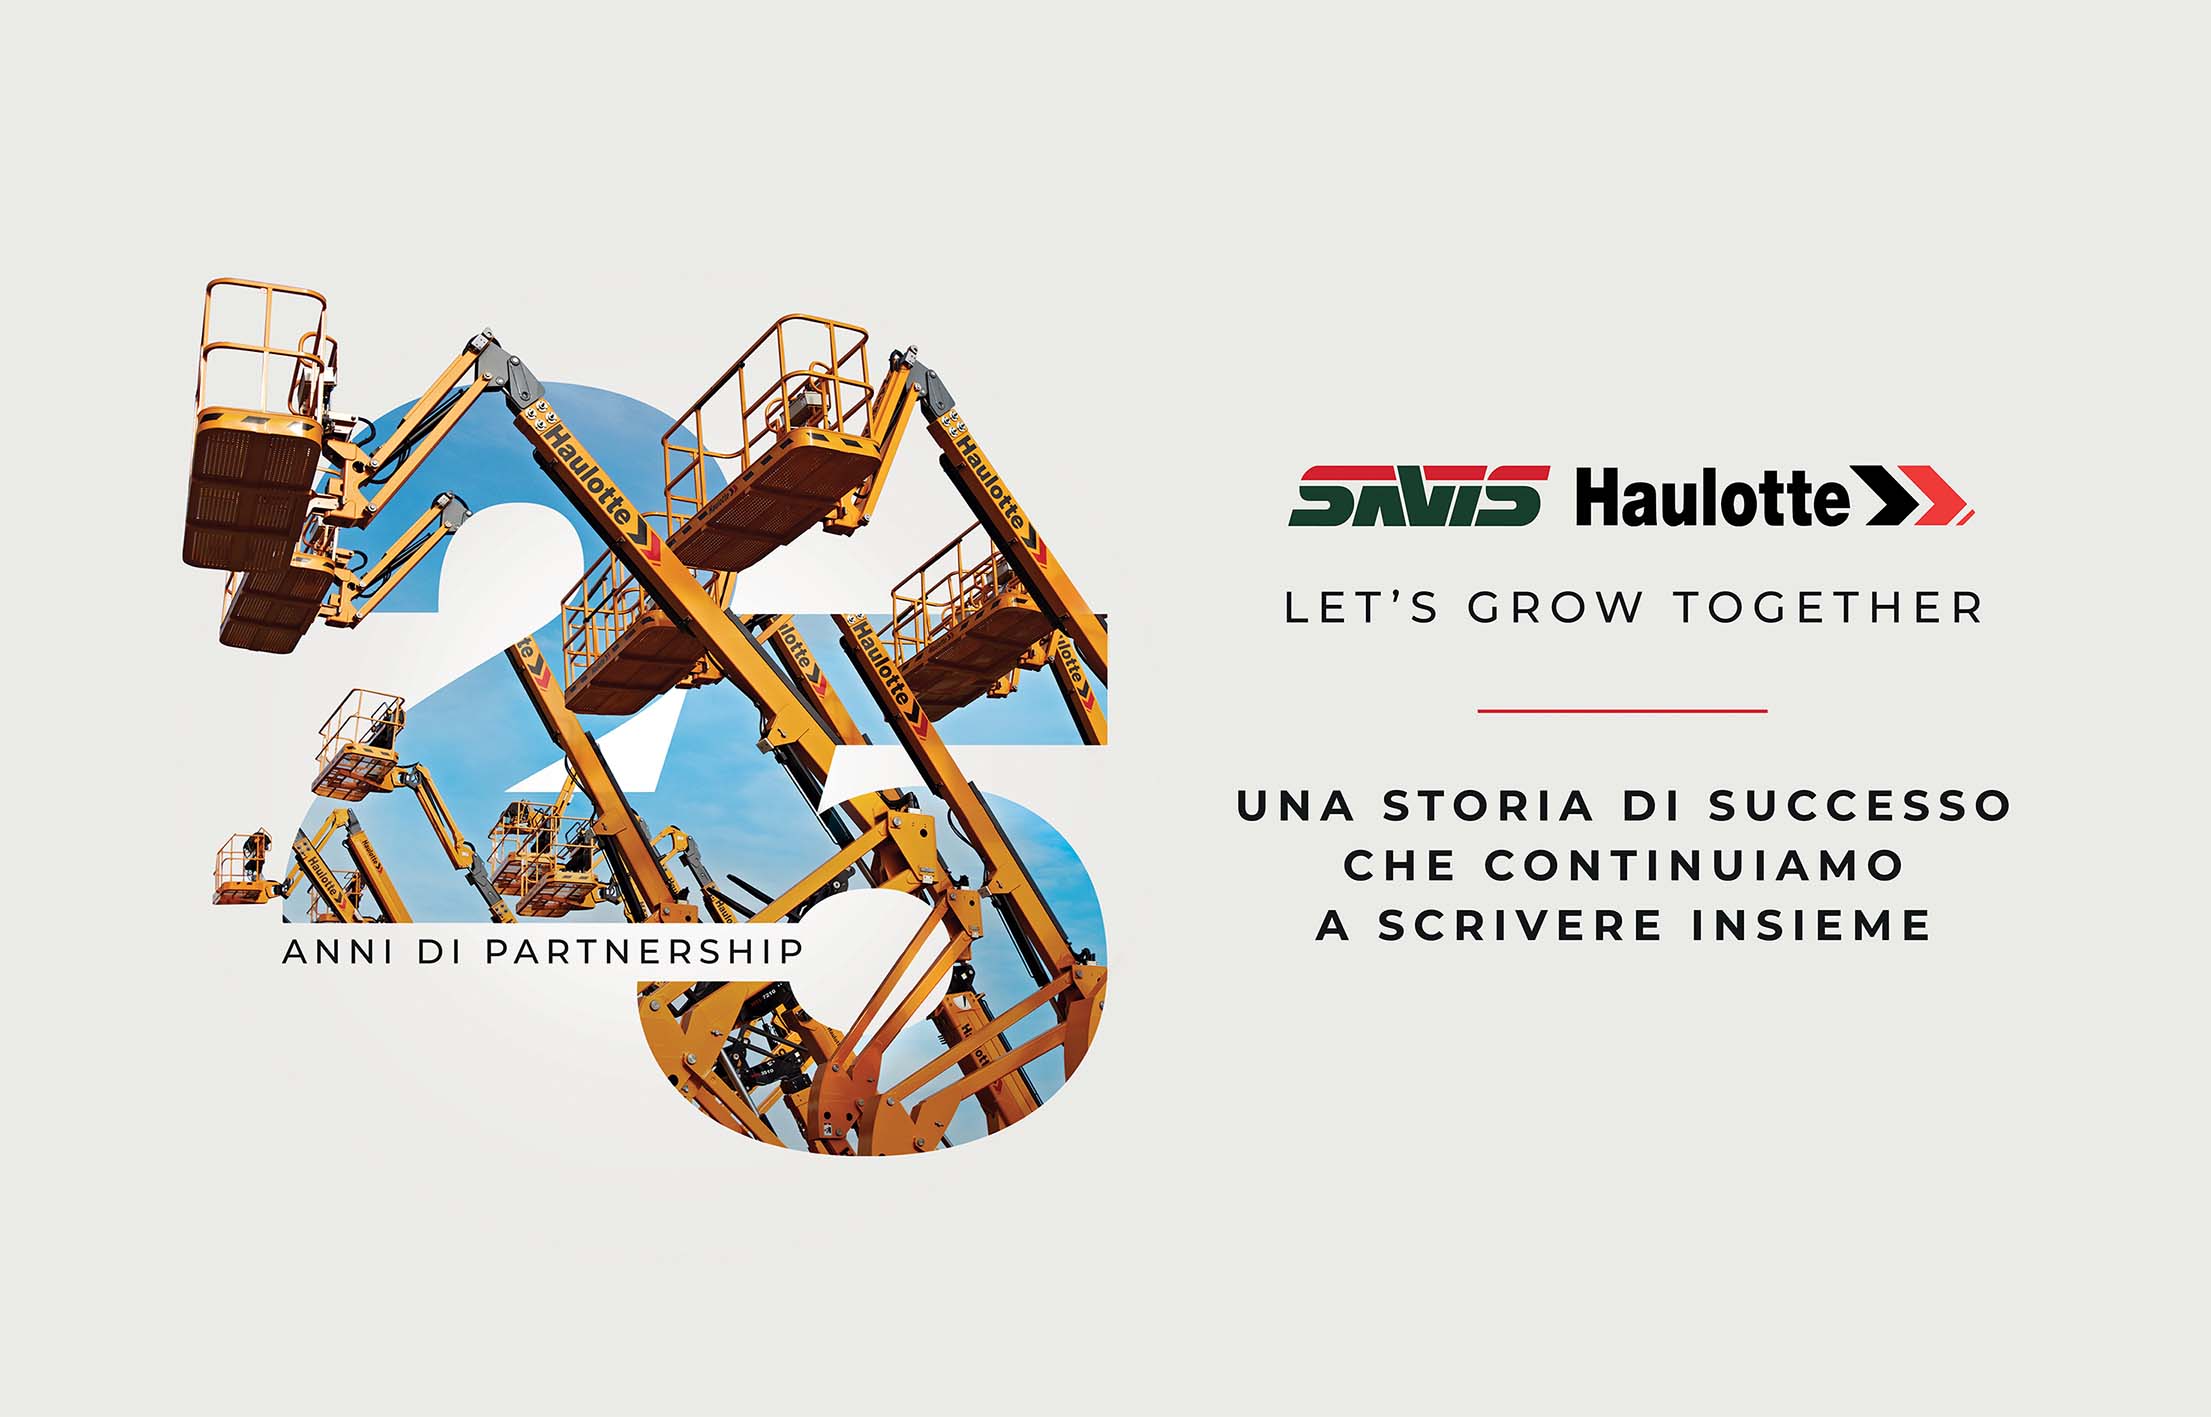 Savis celebra 25 anni di partnership con Haulotte